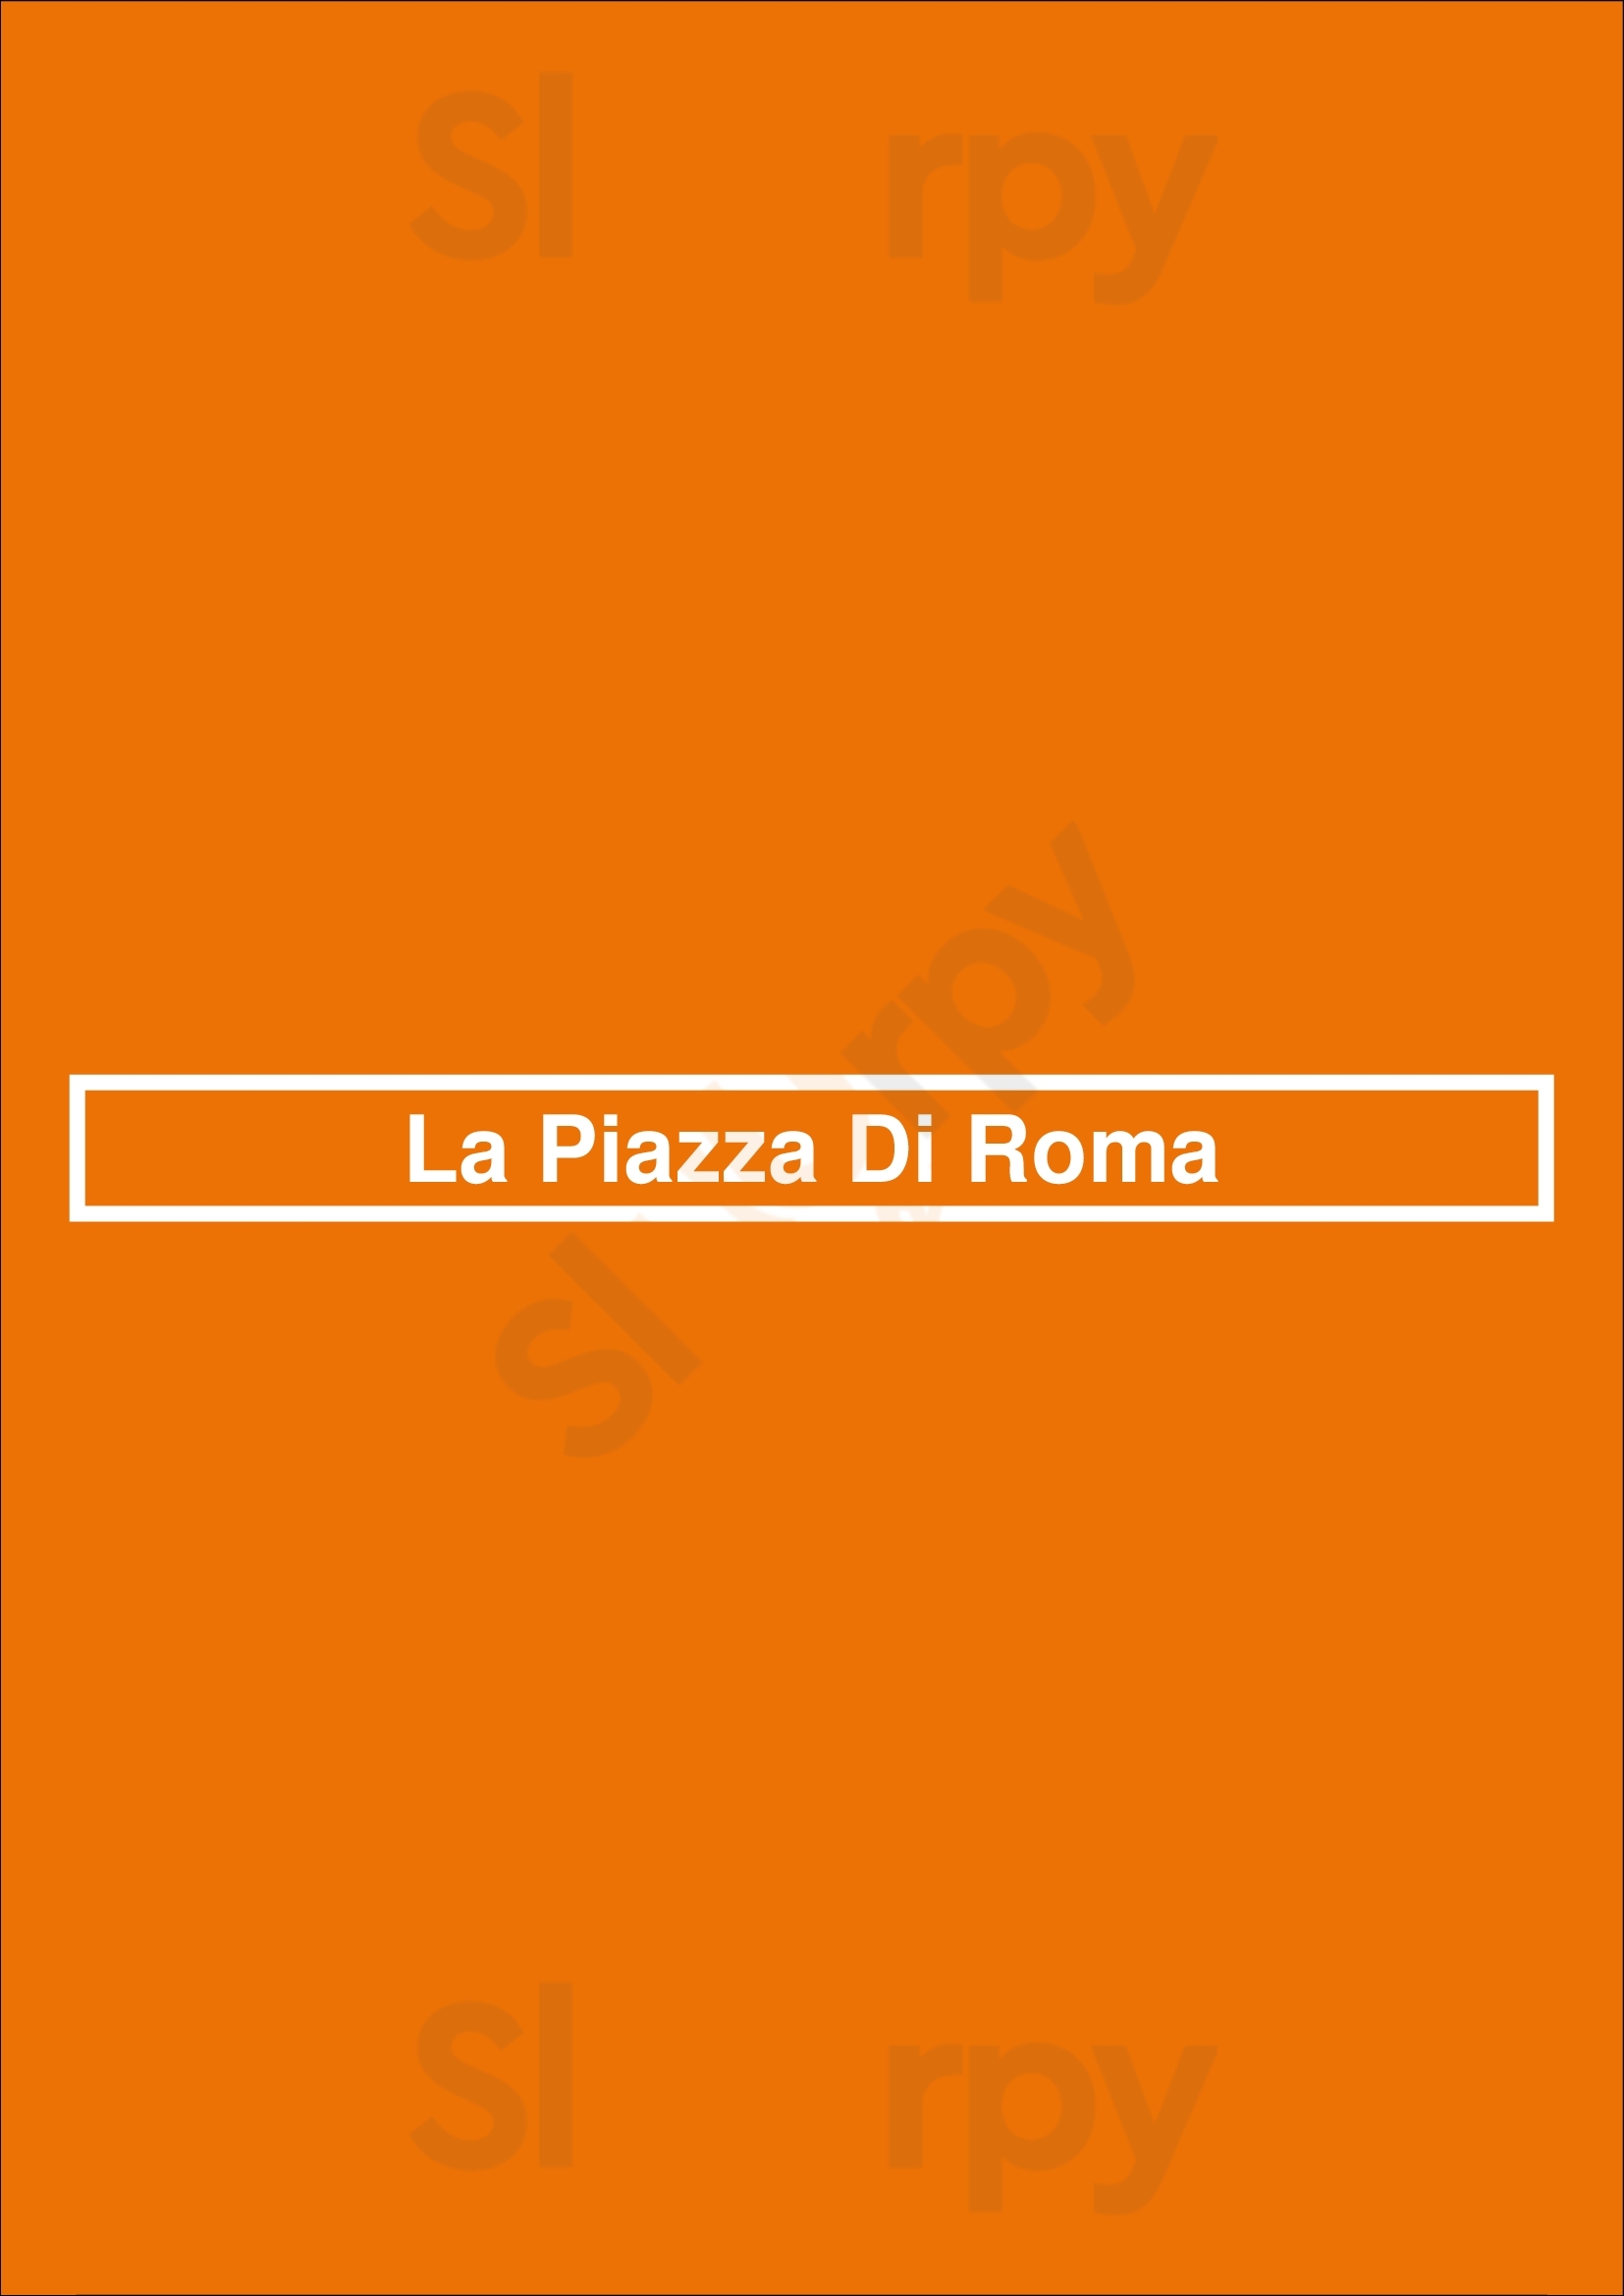 La Piazza Di Roma Amersfoort Menu - 1